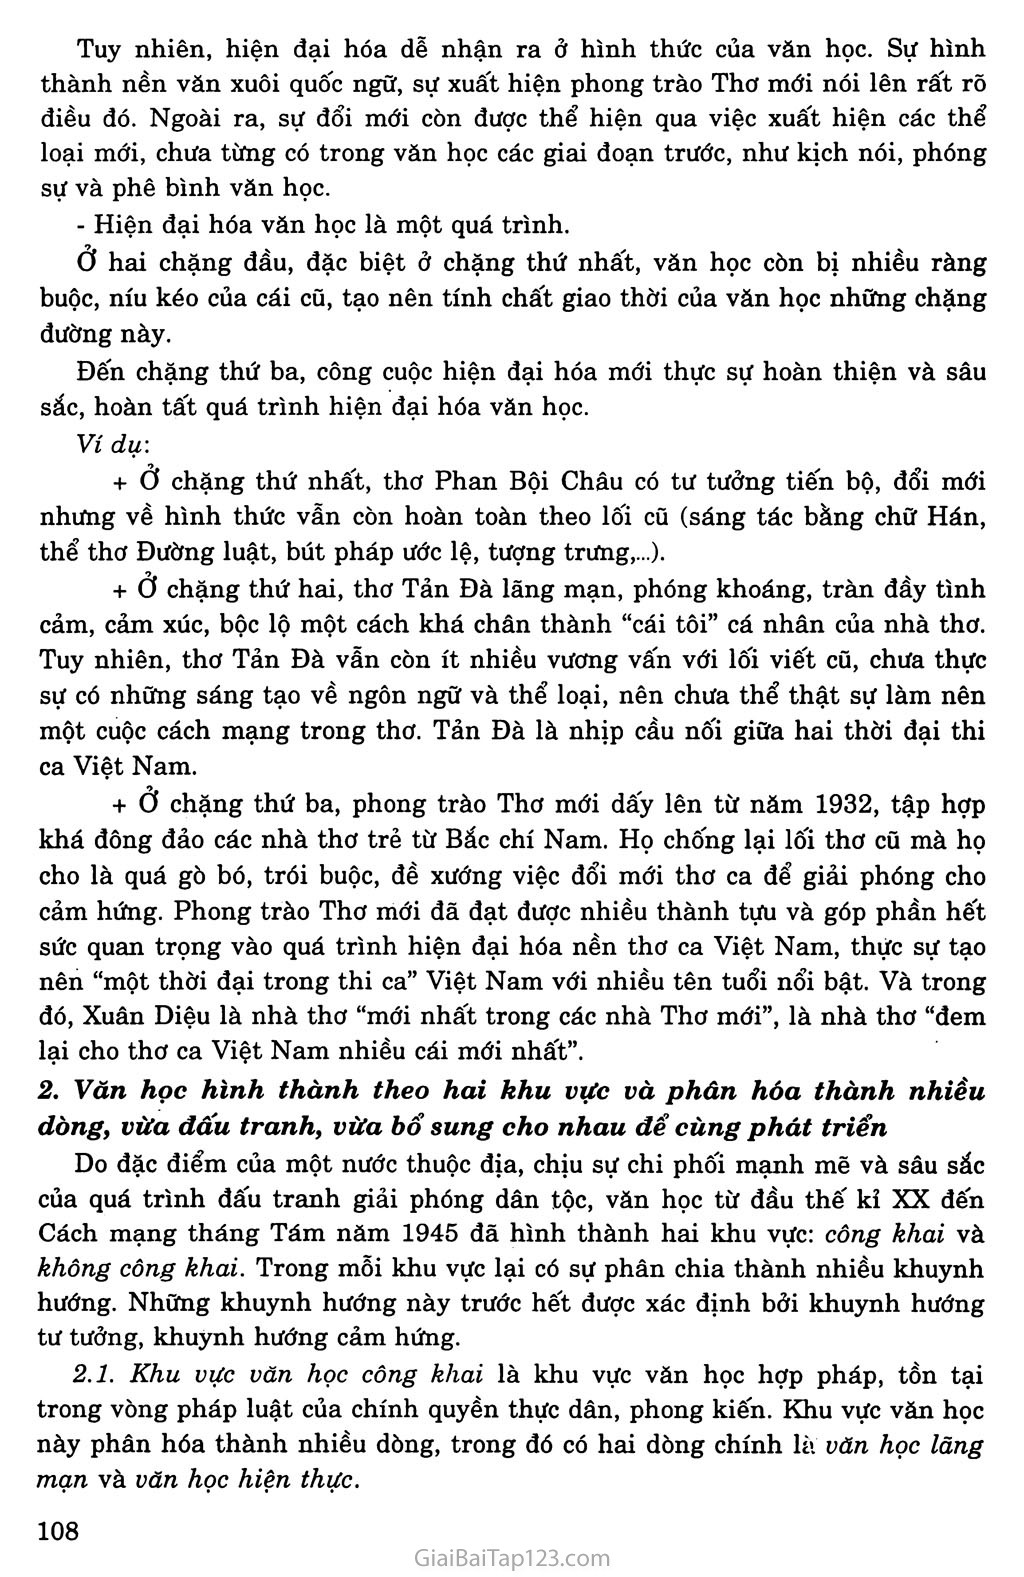 Khái quát văn học Việt Nam từ đầu thế kỉ XX đến cách mạng tháng Tám năm 1945 trang 4